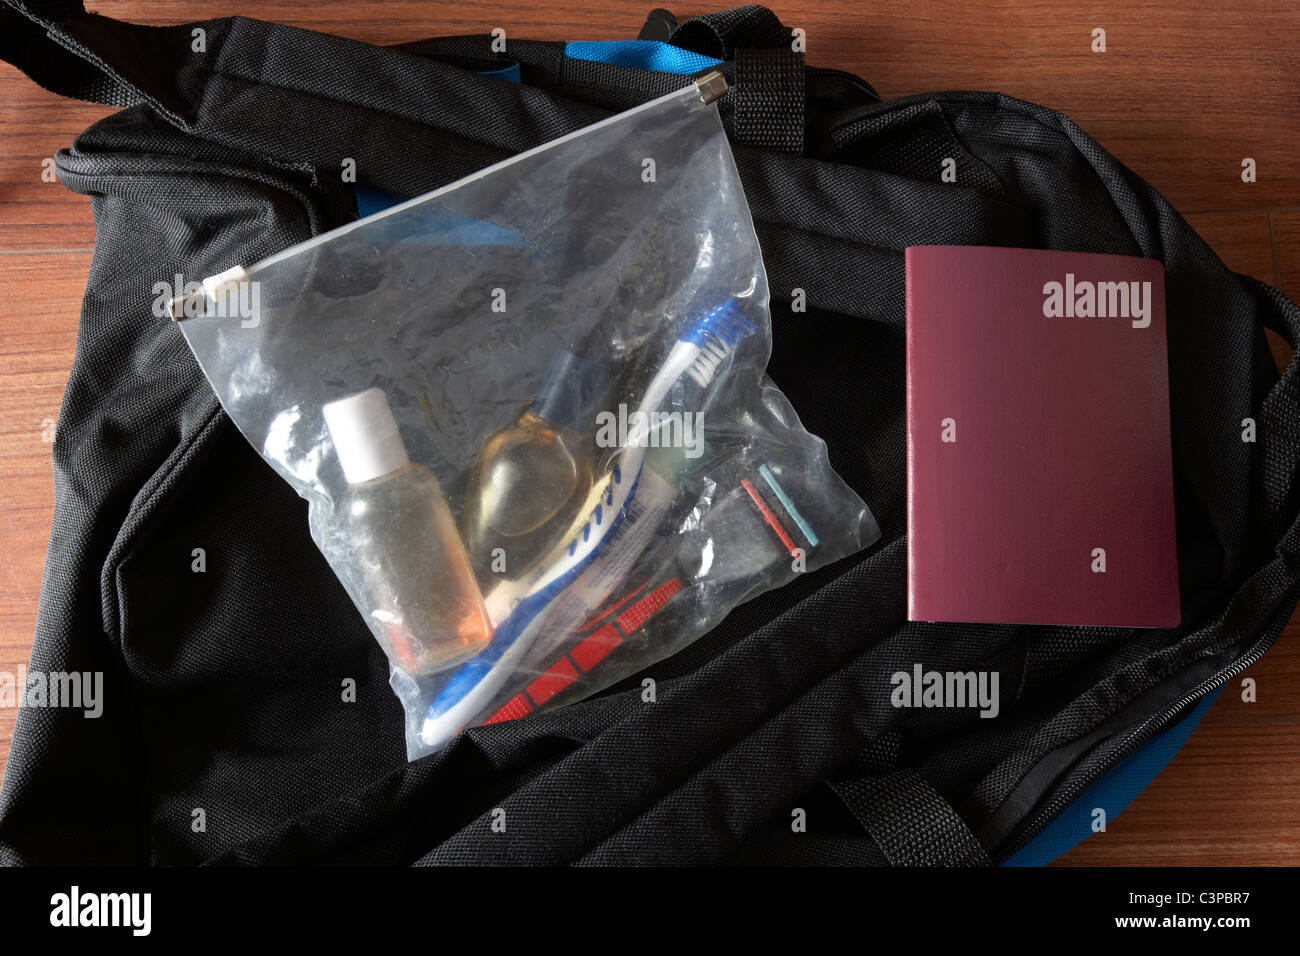 Bagages à main emballés pour voyage rapide dont passeport et d''articles de toilette à voir à travers le sac en plastique Banque D'Images